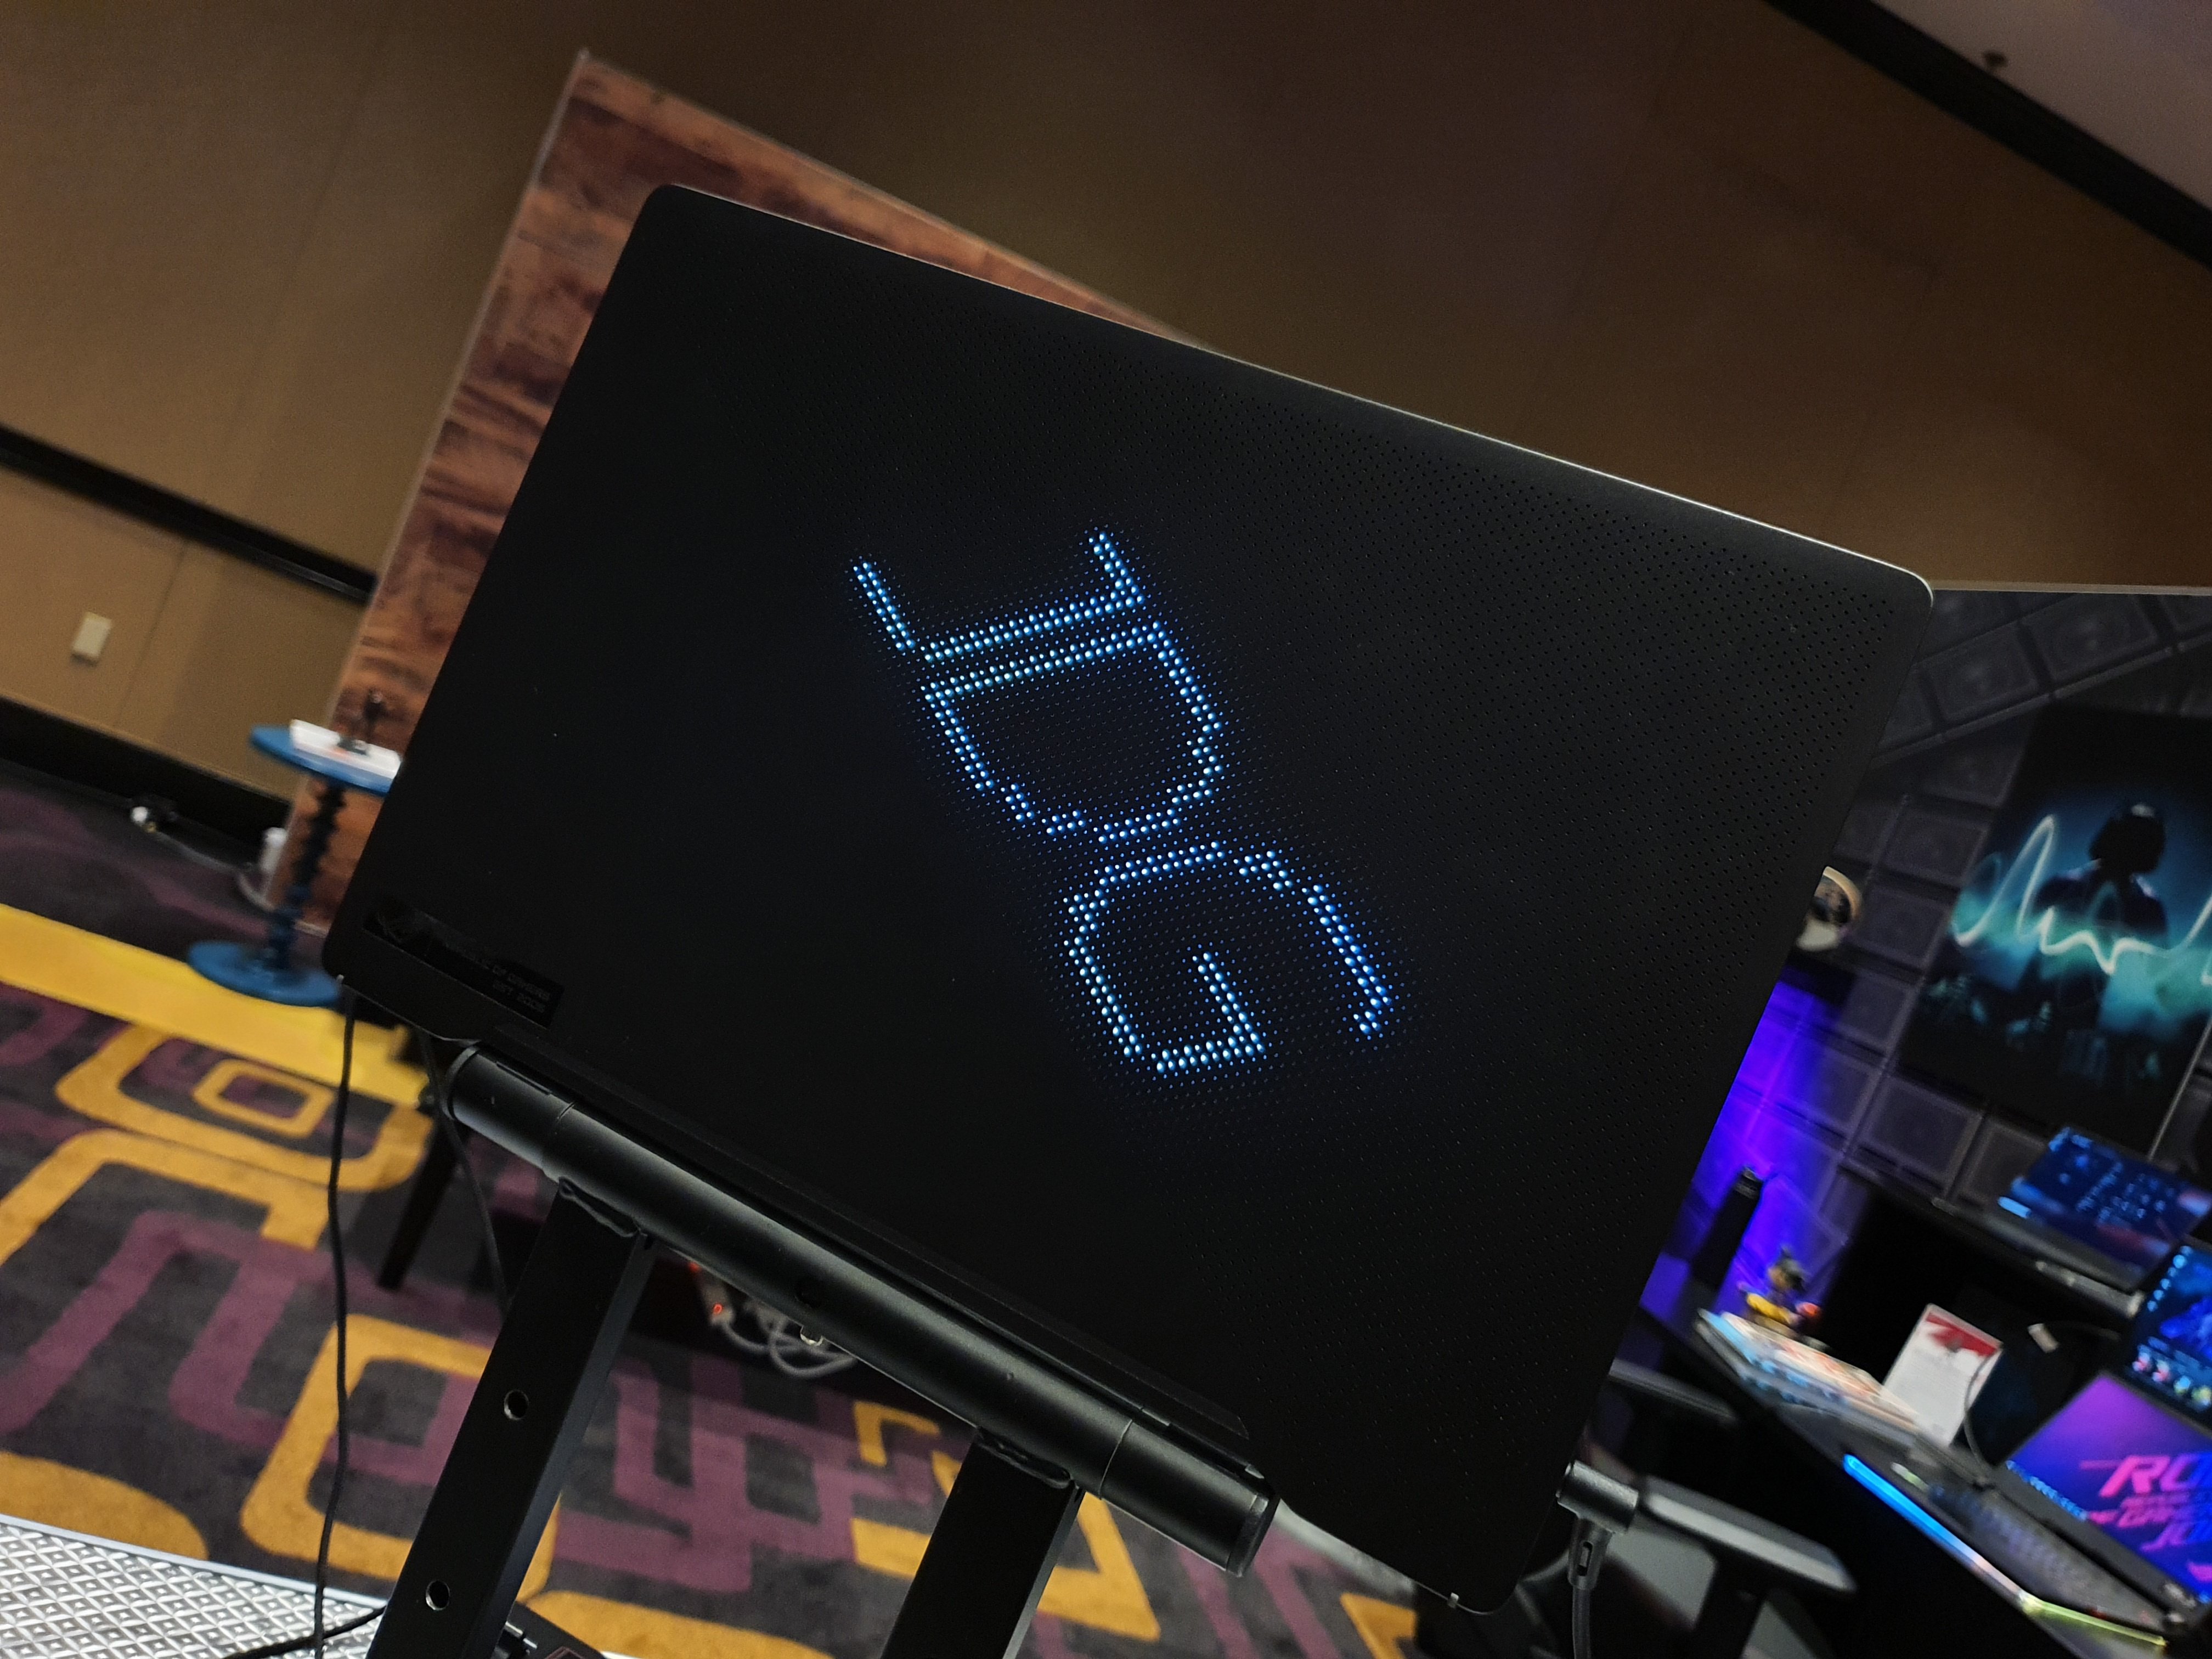 Asus dévoile son premier ordinateur portable pour gamer de 14 pouces, le  G46VW - Le Monde Numérique